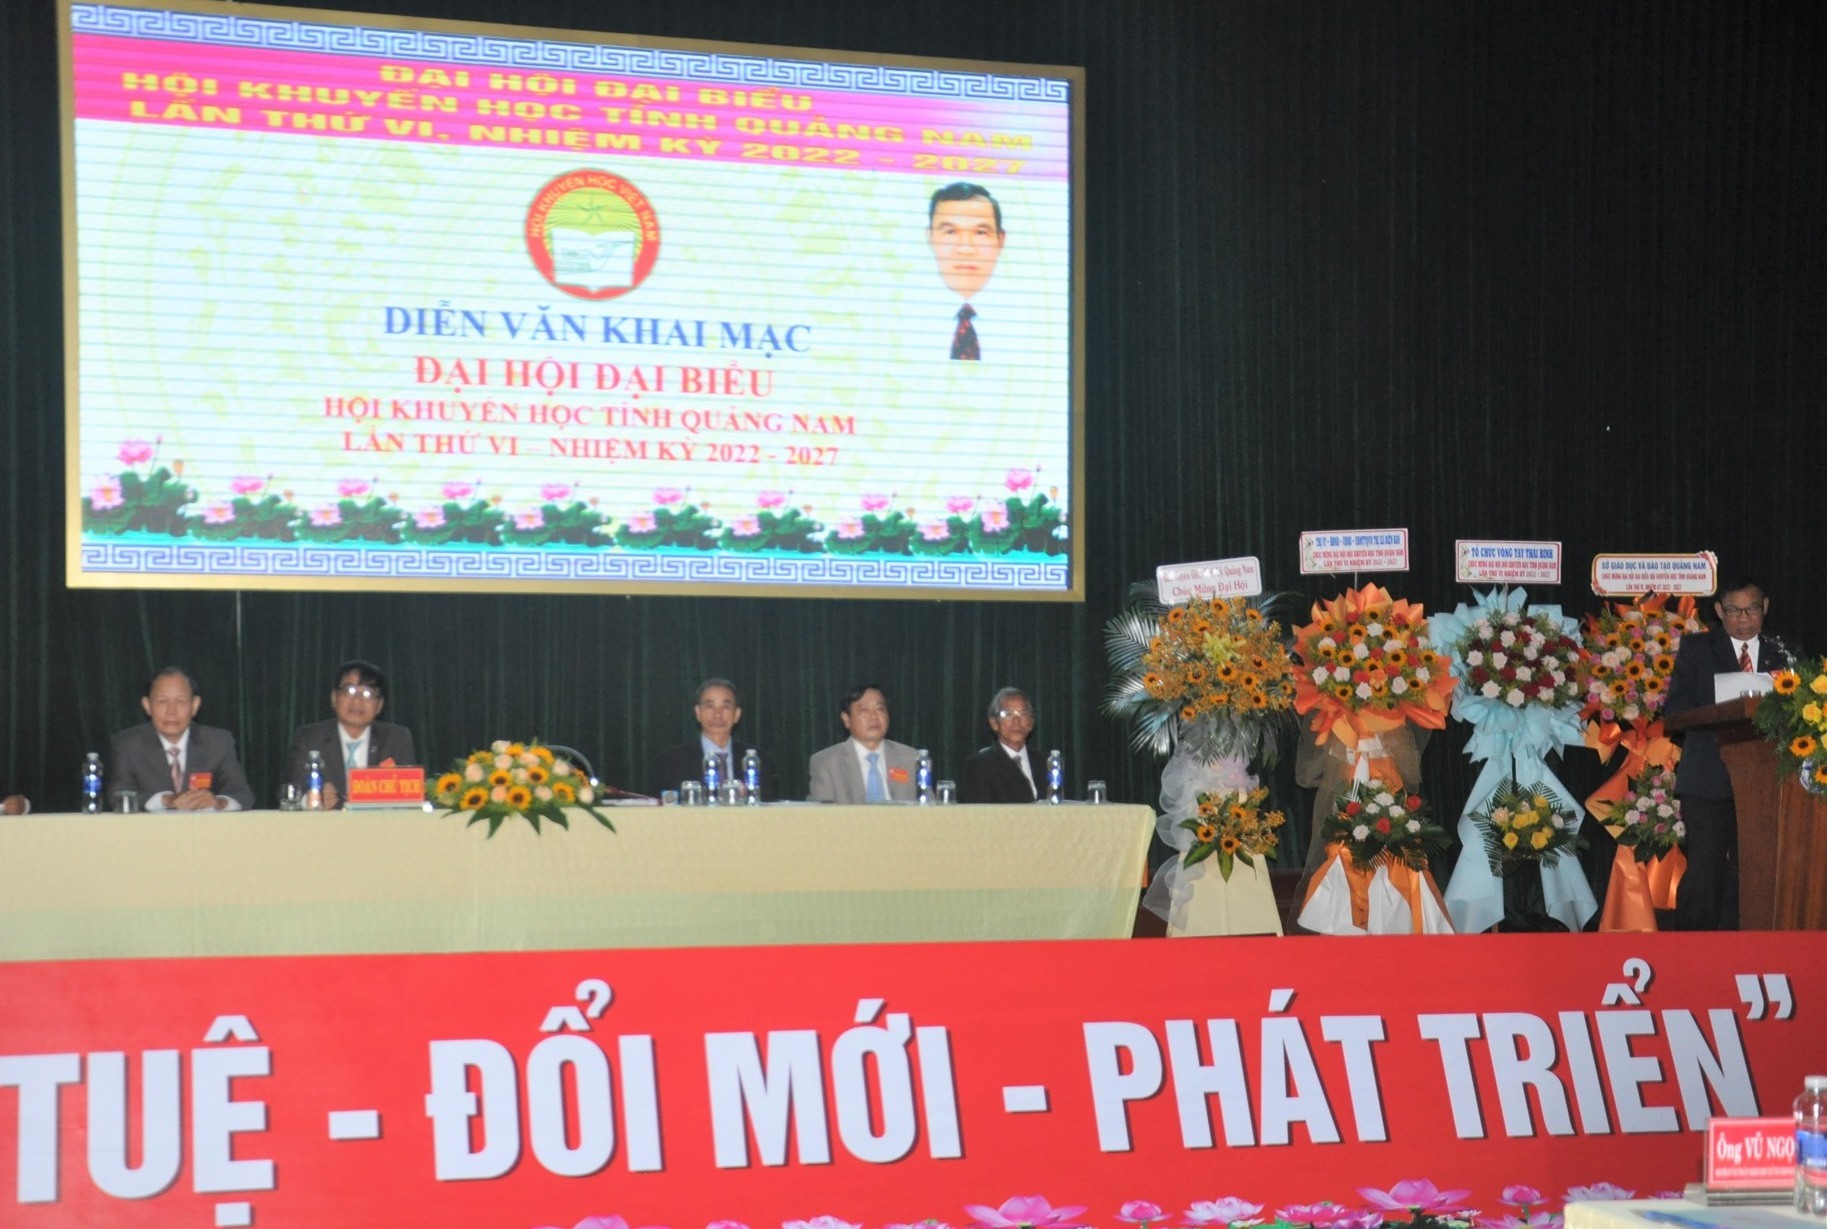 Hội Khuyến học tỉnh Quảng Nam tổ chức Đại hội Đại biểu lần thứ 4 - Ảnh 3.